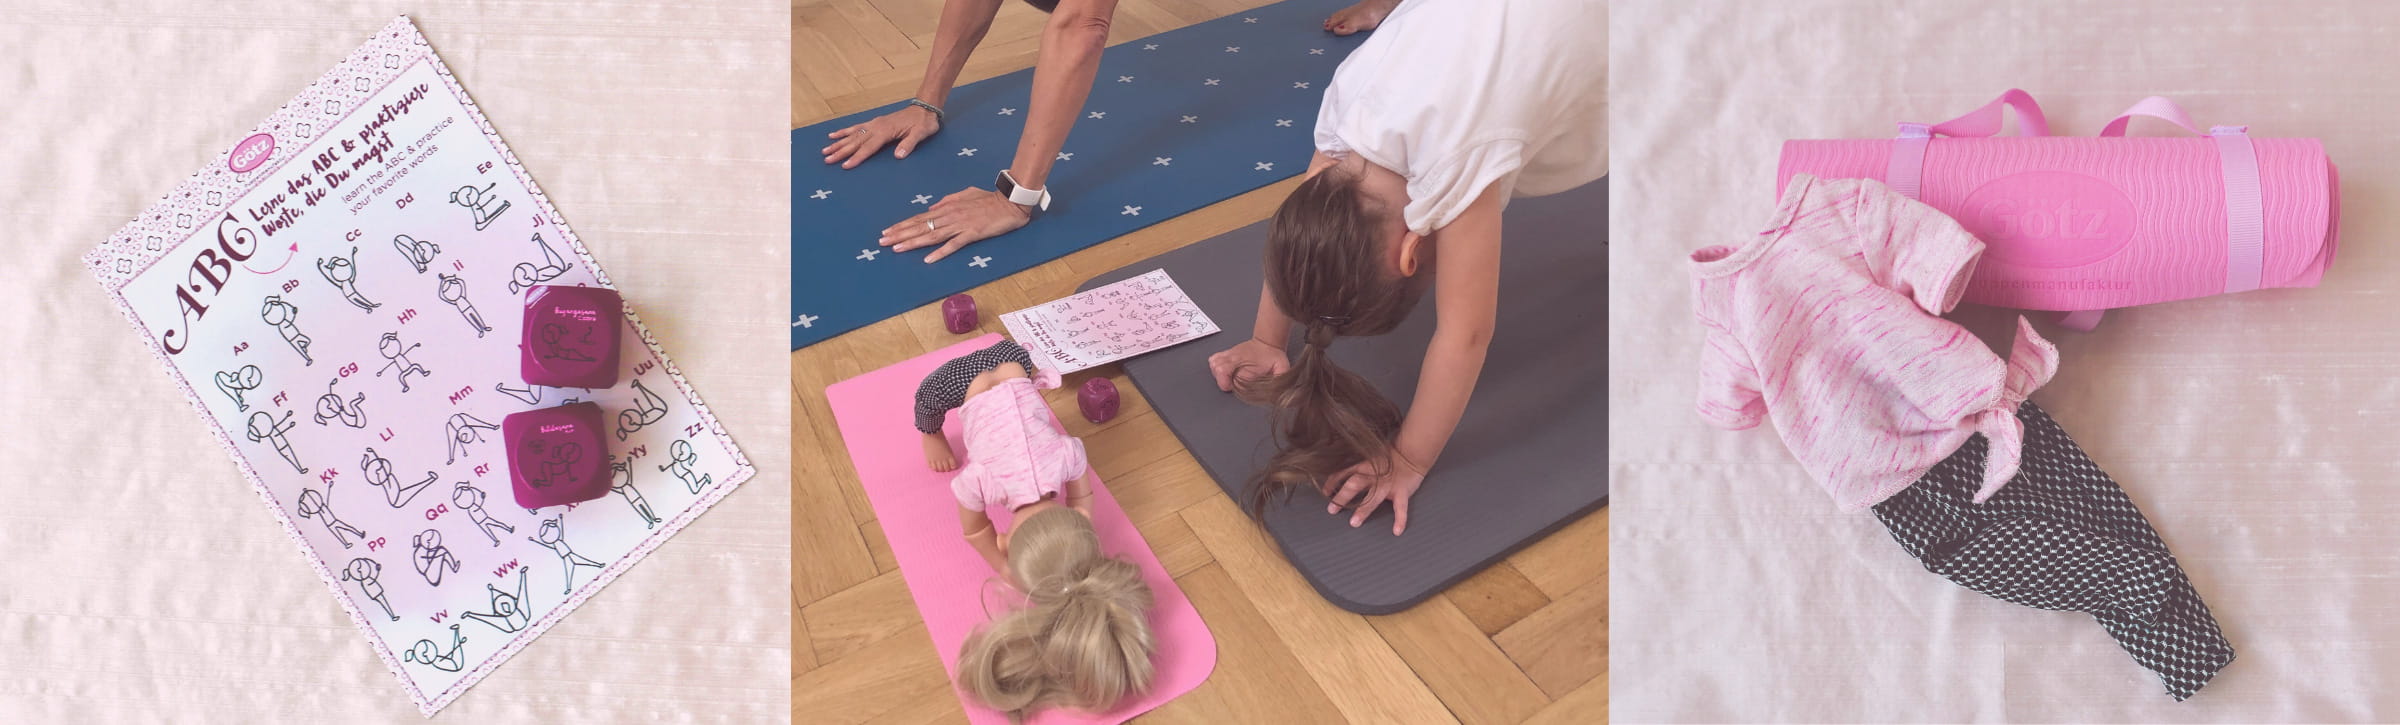 Kind macht Yoga mit Yogapuppe von Goetz, links und rechts sind Puppenaccsessories abgebildet zum spielen